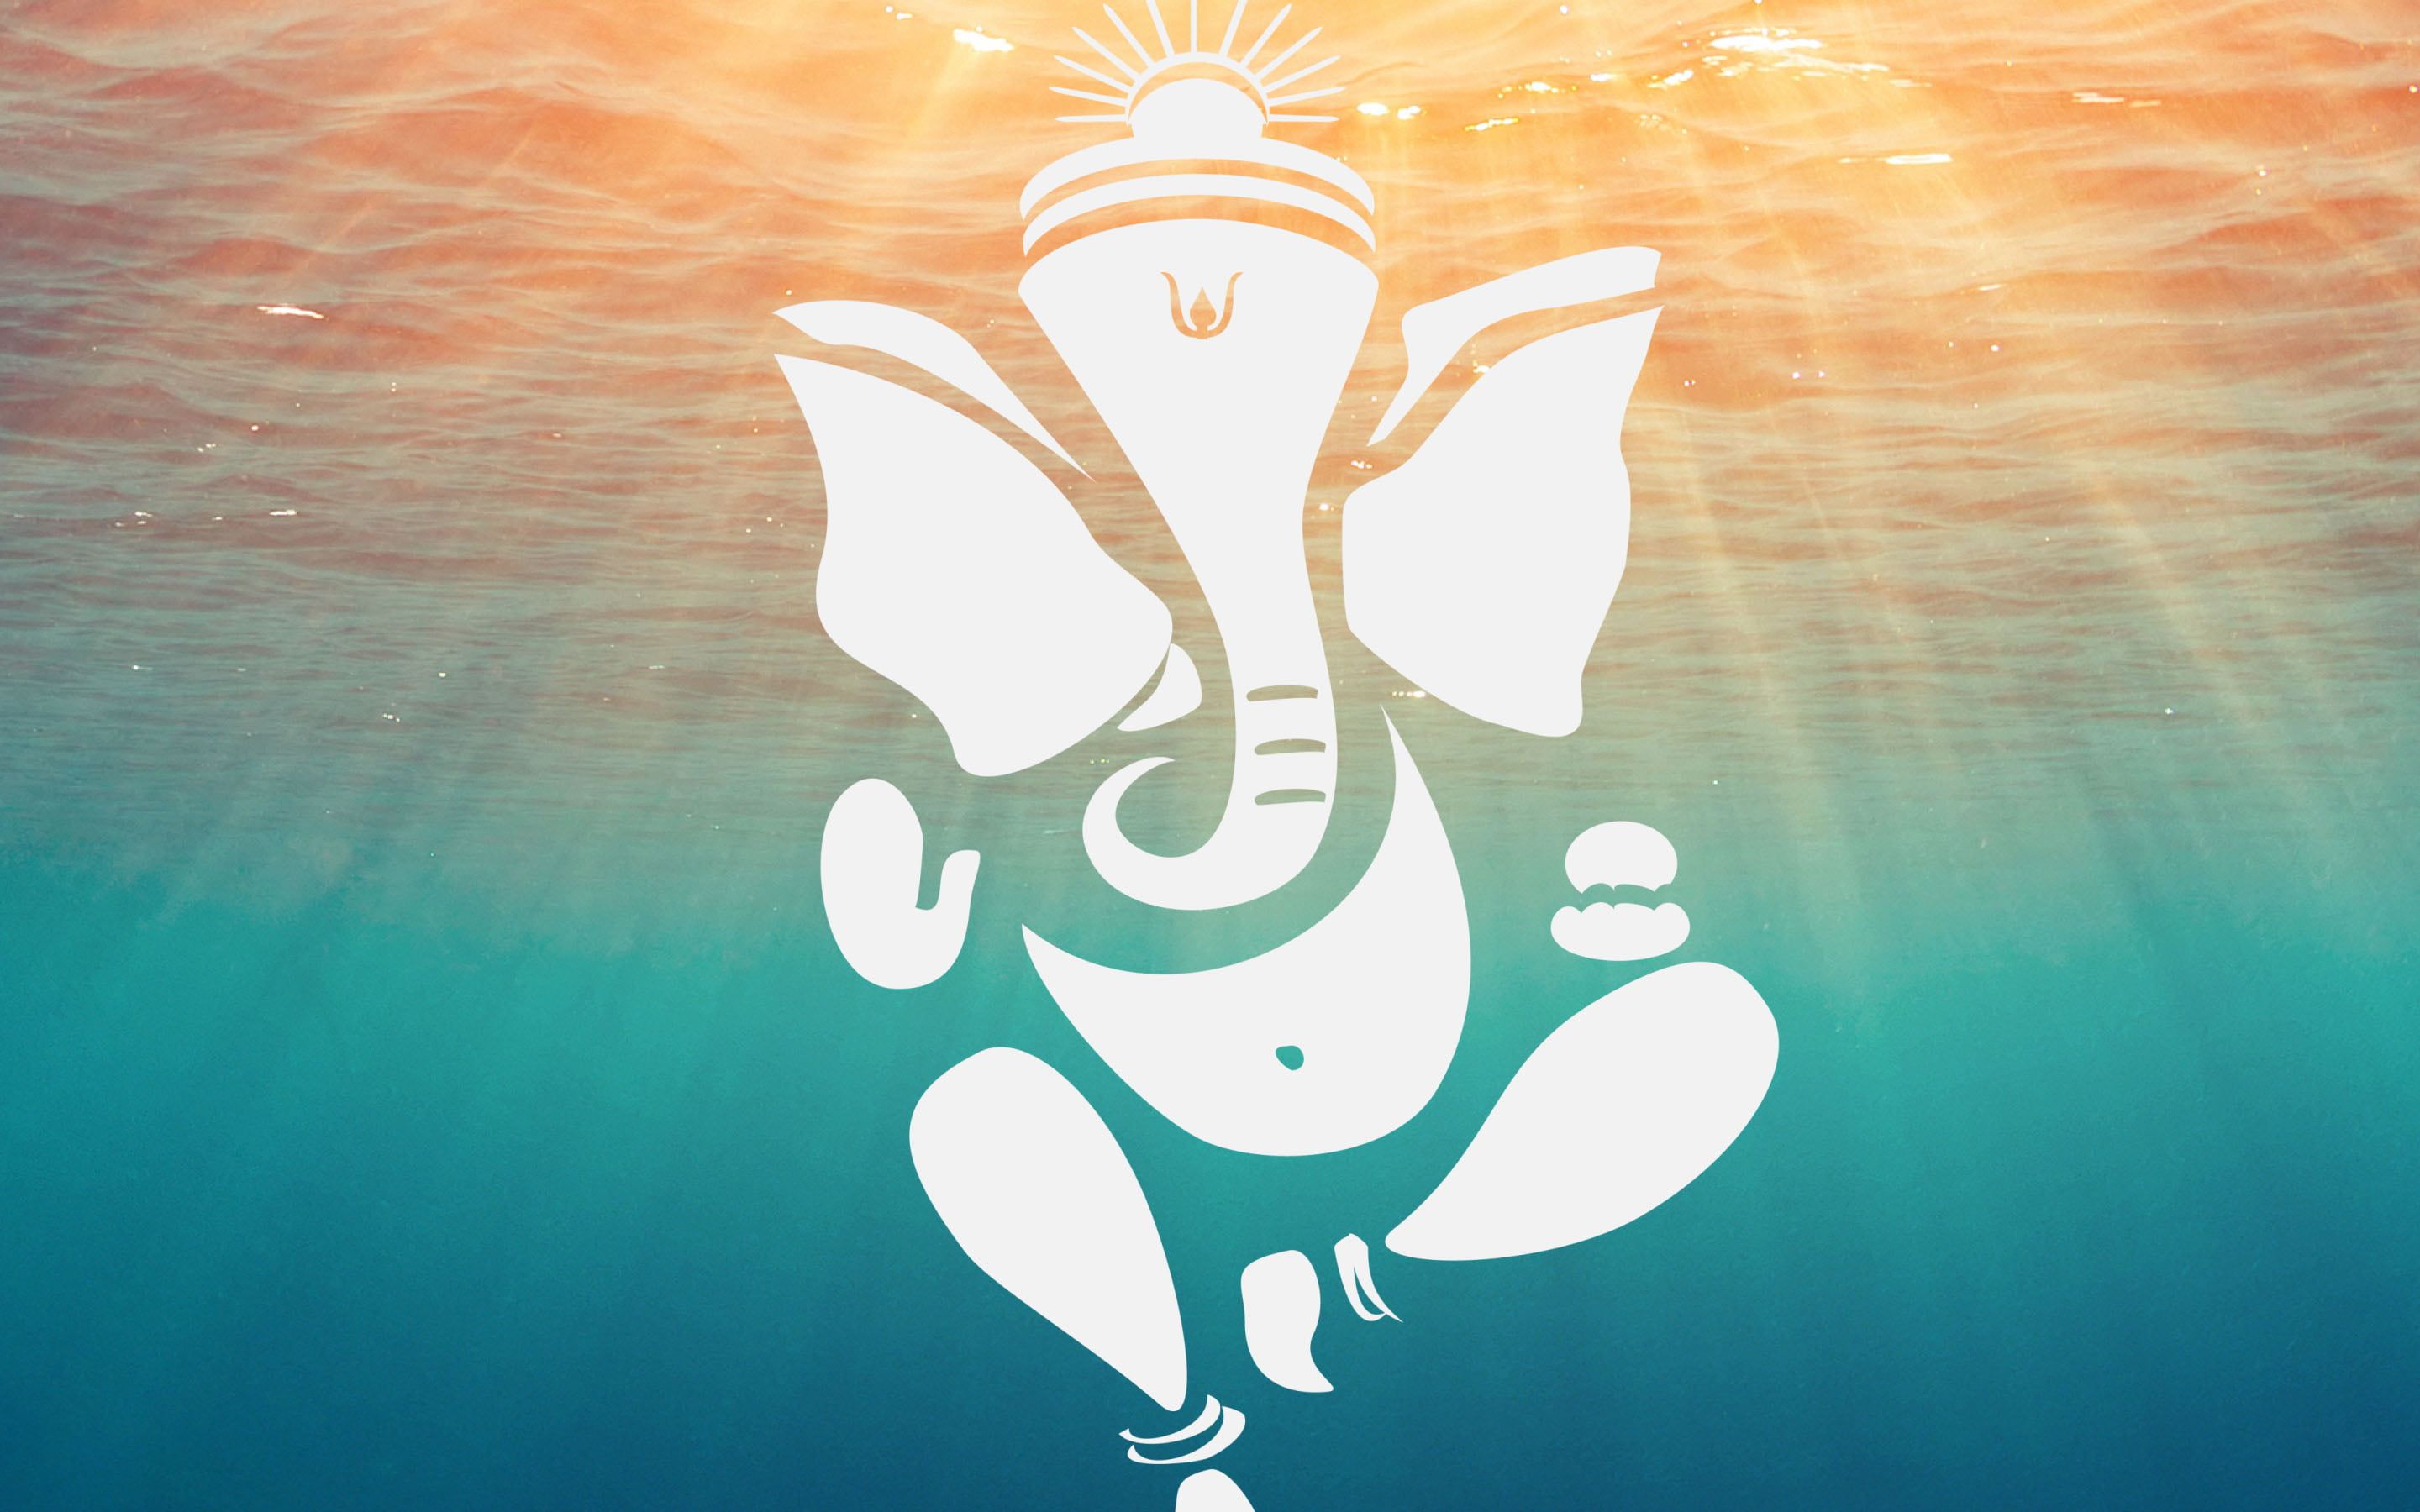 Lord Ganesha Deep Ocean Water, elephant god illustration #God Lord Ganesha #water #ocean #ganesha #lord K. God illustrations, Ganesh art, Lord ganesha paintings